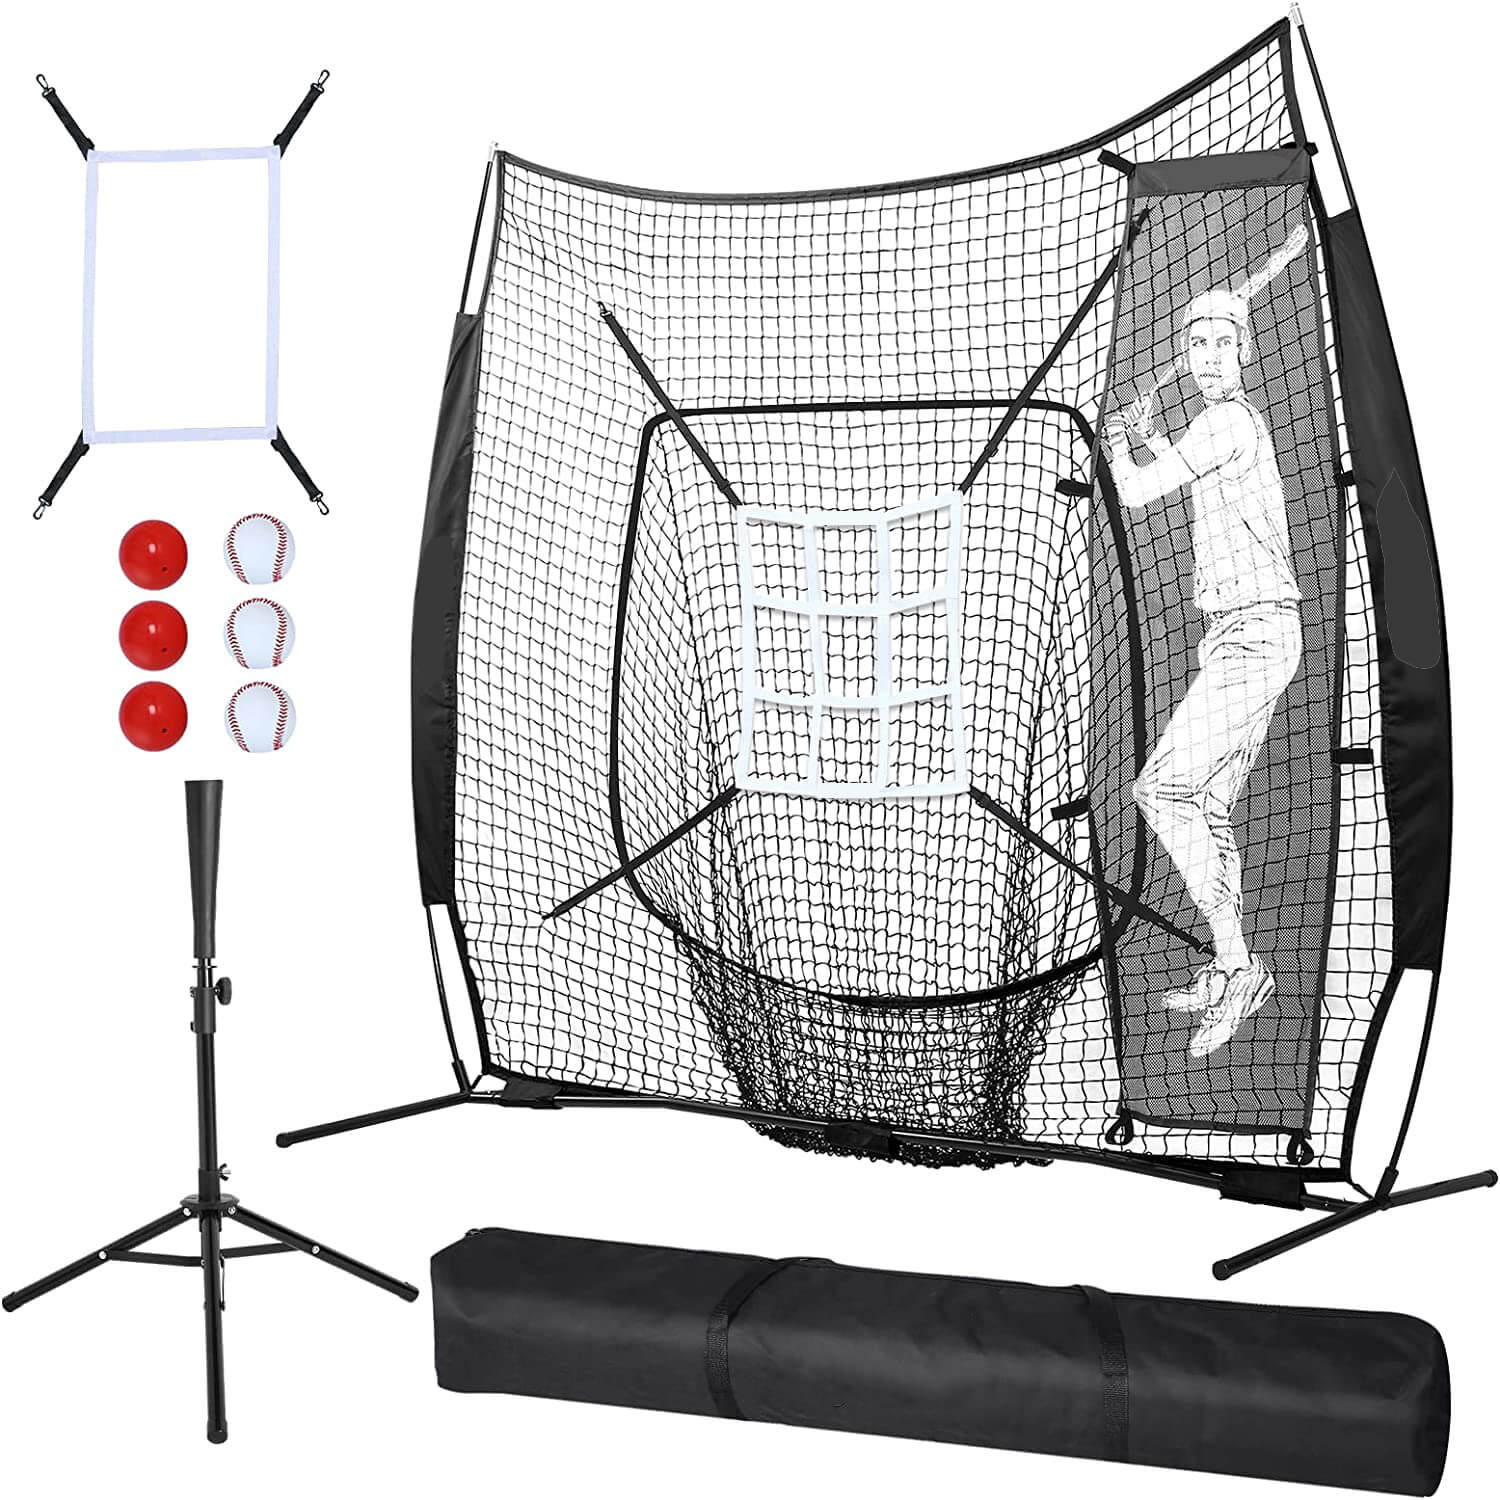 Baseball Softball Practice Net for Hitting and Pitching with Batting Tee Baseball Hitting Pitching Net